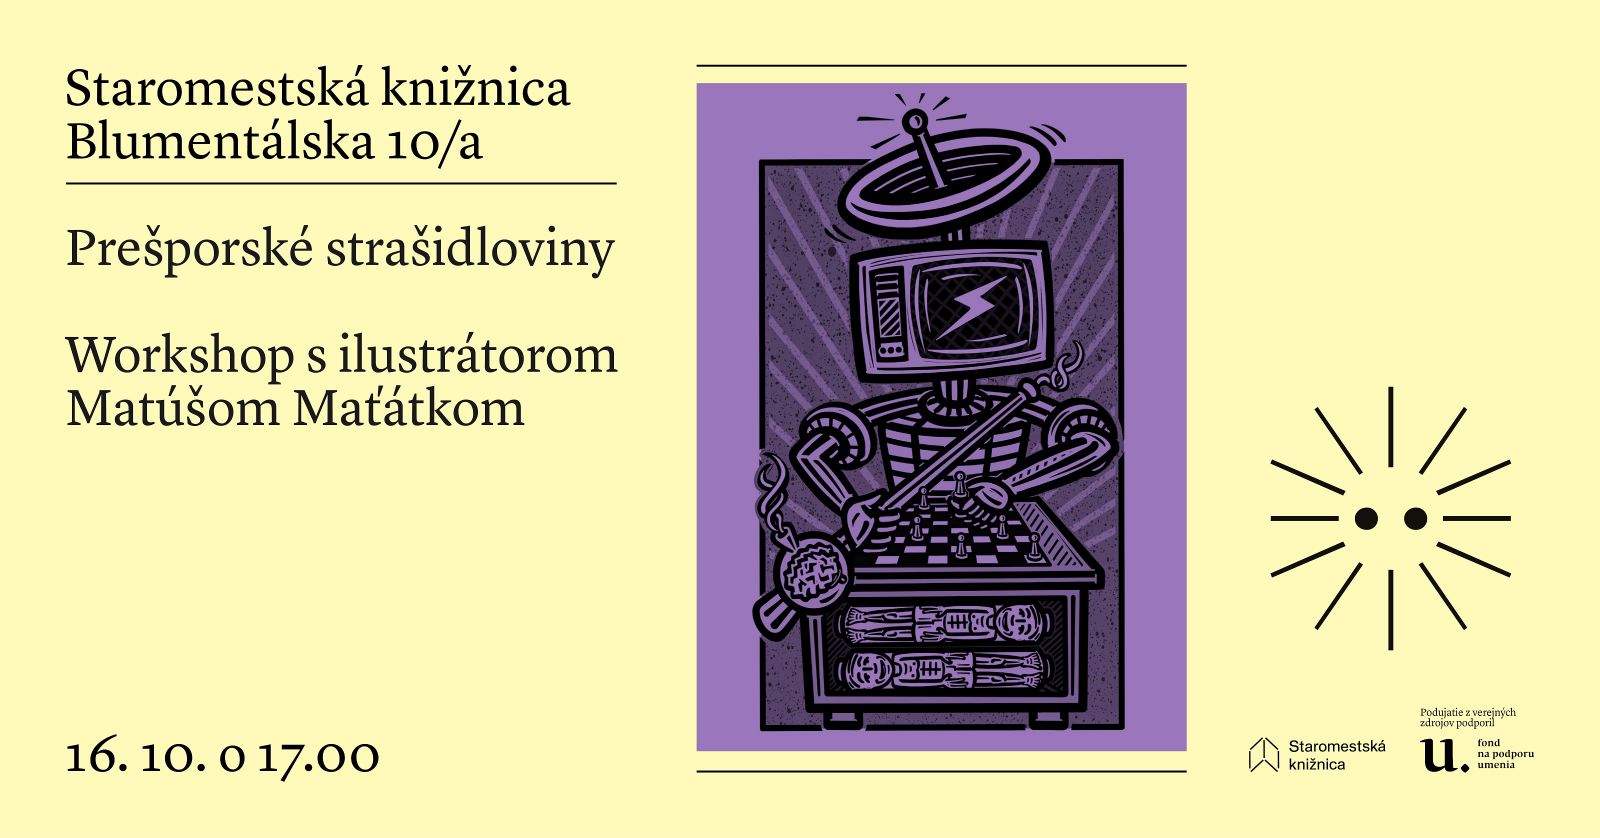 Prešporské strašidloviny - workshop pre deti s ilustrátorom Matúšom Maťátkom v pondelok 16. októbra o 17.00 v Staromestskej knižnici na Blumentálskej 10/a